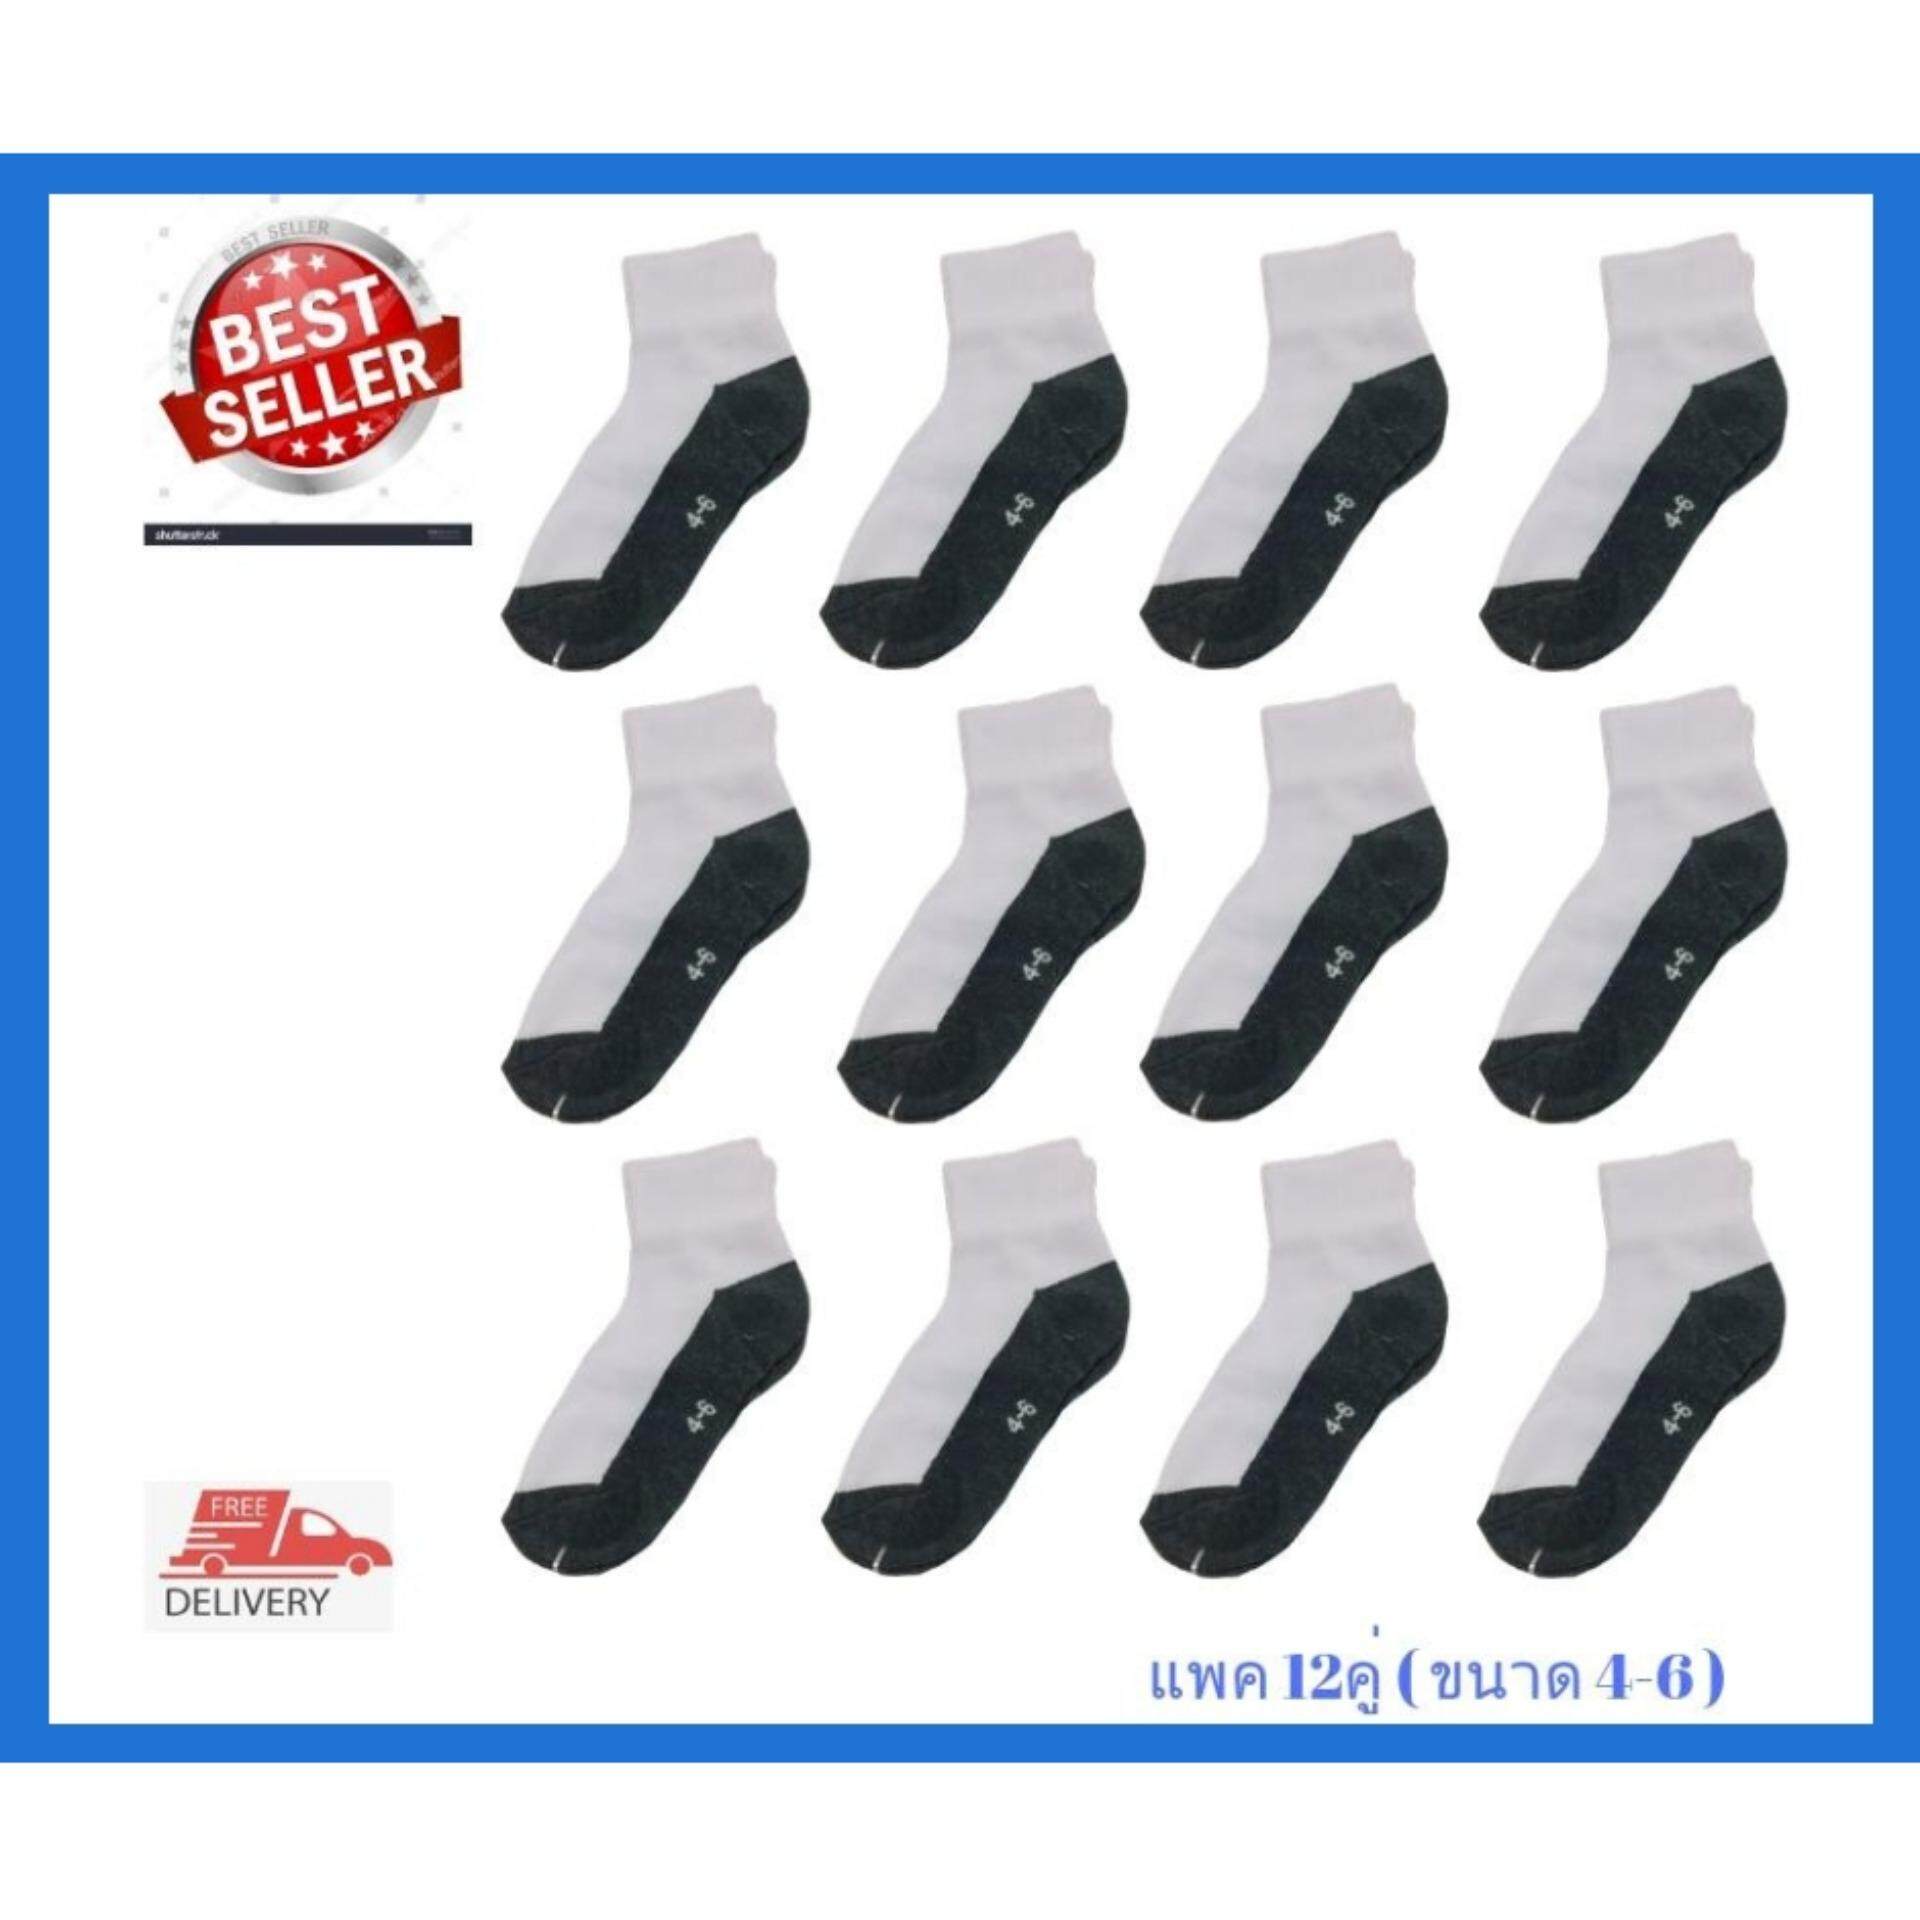 ถุงเท้านักเรียน ถุงเท้าเด็ก ถุงเท้าข้อสั้น สำหรับเด็กหญิงและเด็กชาย ไซค์ 4-6 สีขาวเทา แพ็ค 12 คู่